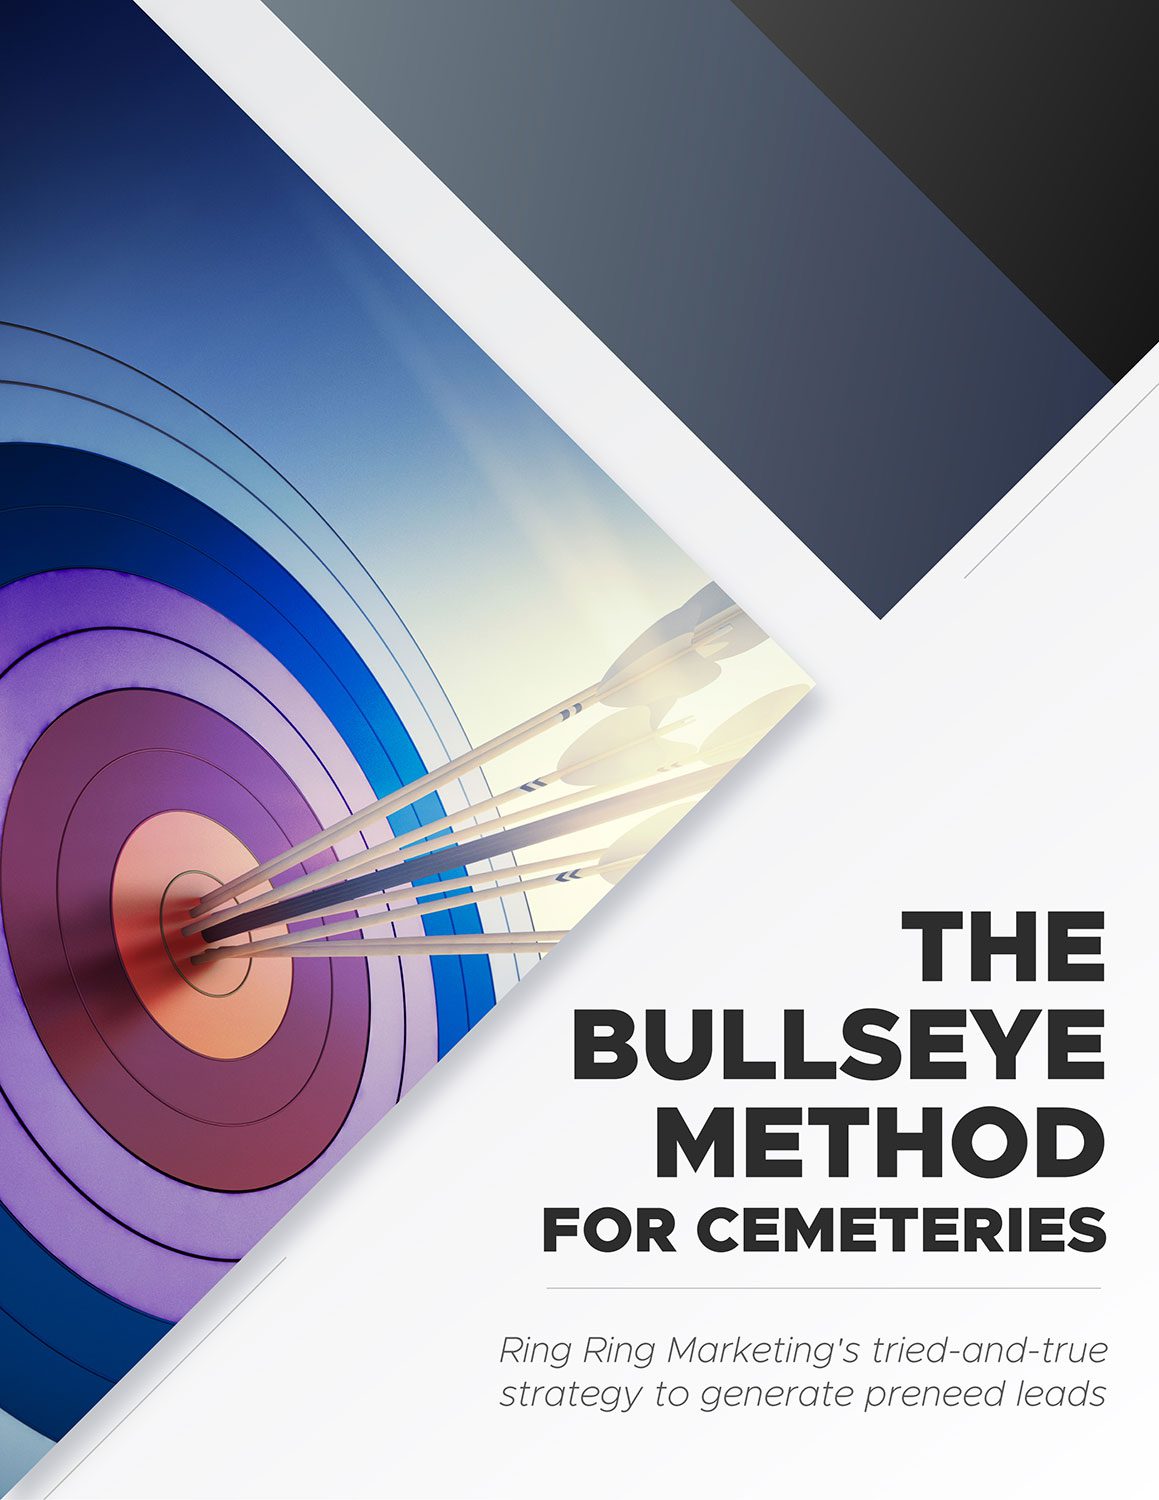 The Bullseye Method for Cemeteries